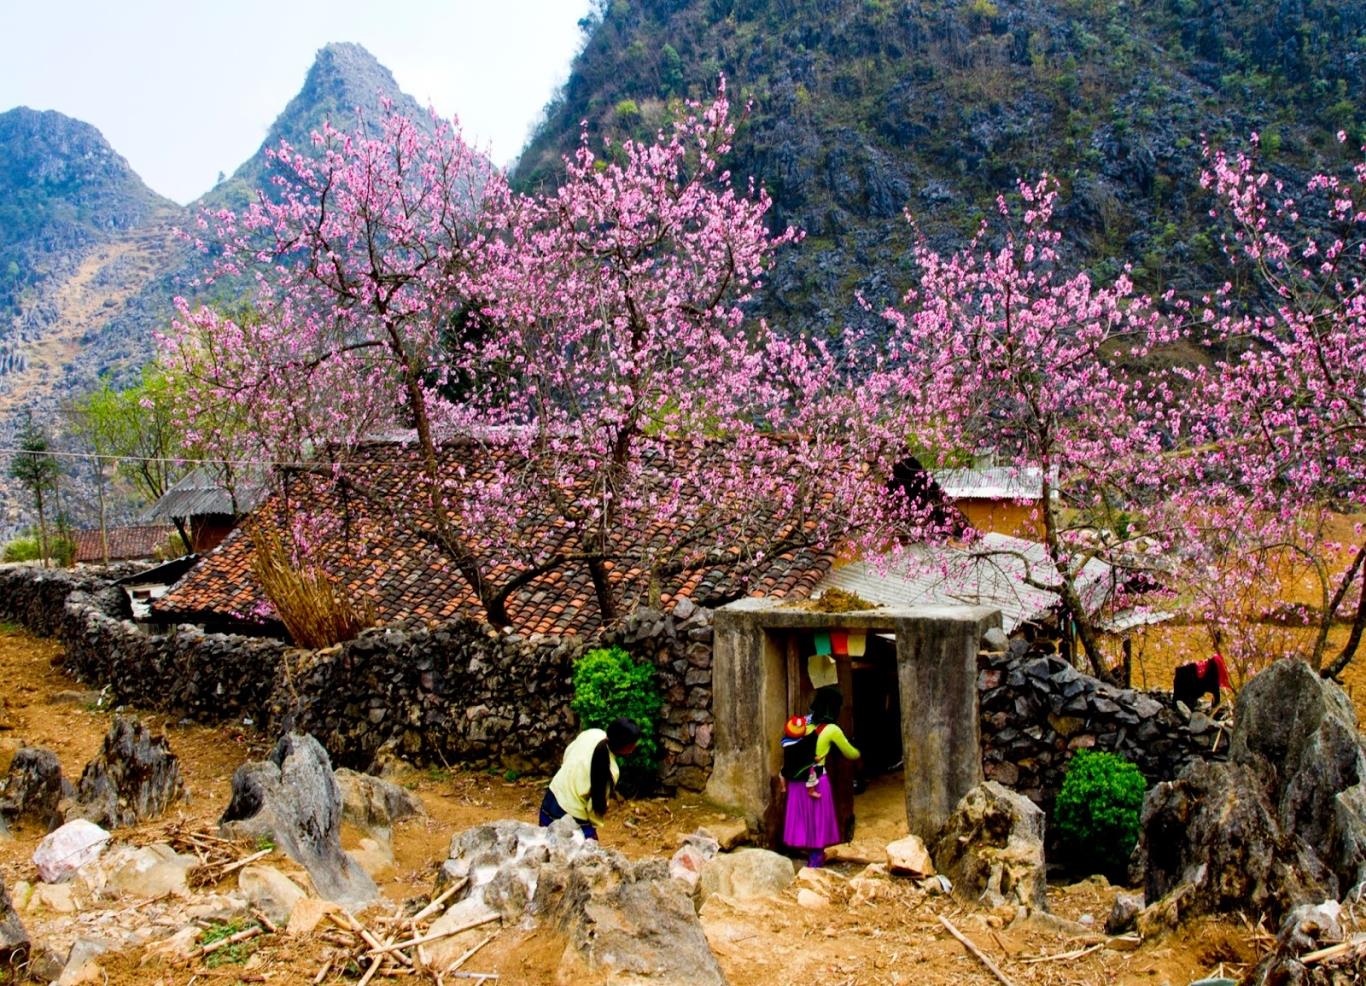 Khám phá các mùa hoa ở Mộc Châu - 7 bức tranh thiên nhiên tuyệt mỹ 4